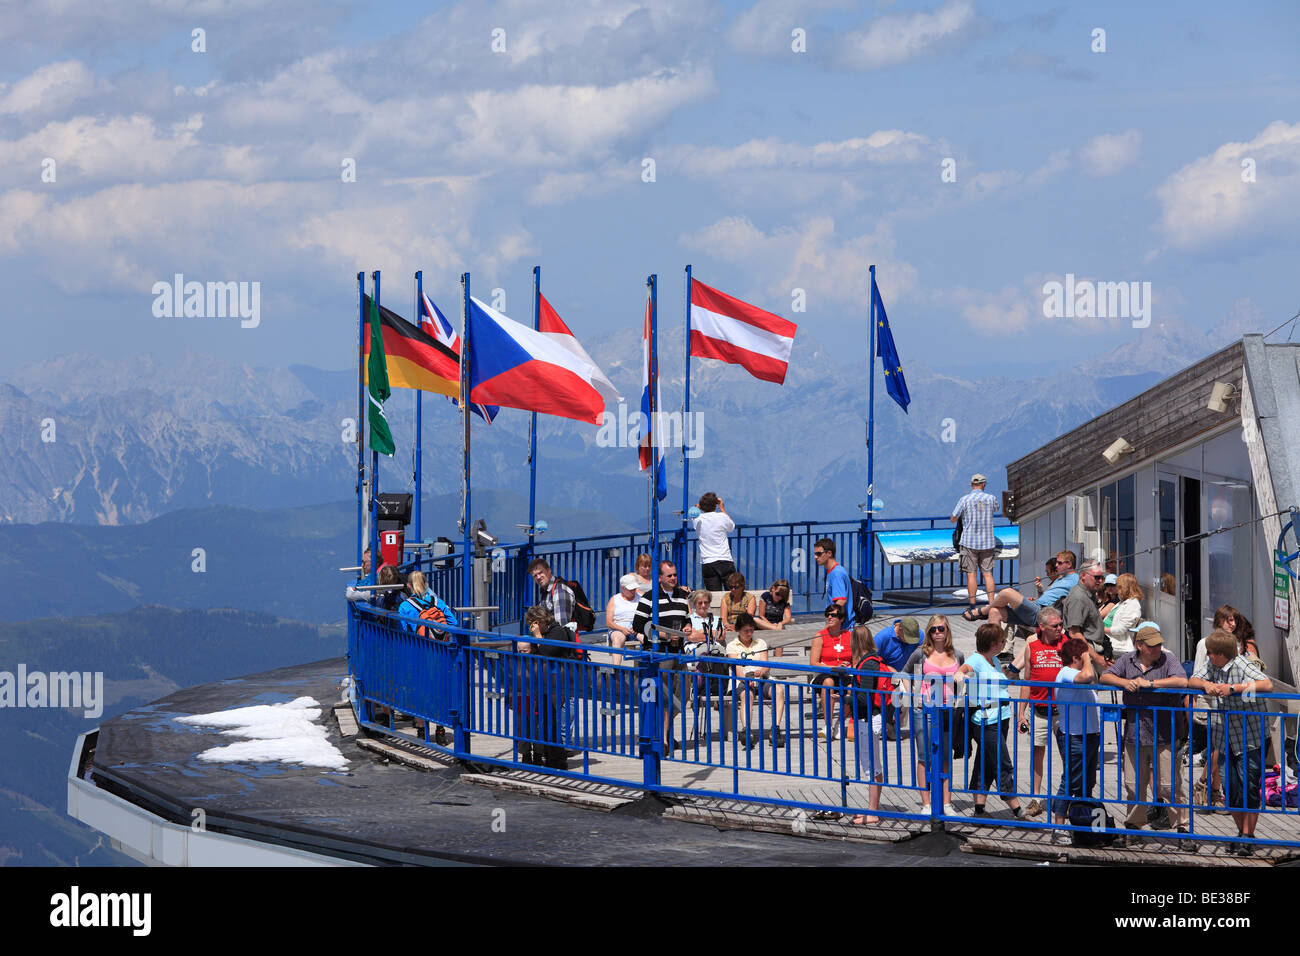 Plataforma de visualización, cumbre de la estación del teleférico a la montaña Kitzsteinhorn, Hohe Tauern, estado federal de Salzburgo, Austria, UE Foto de stock